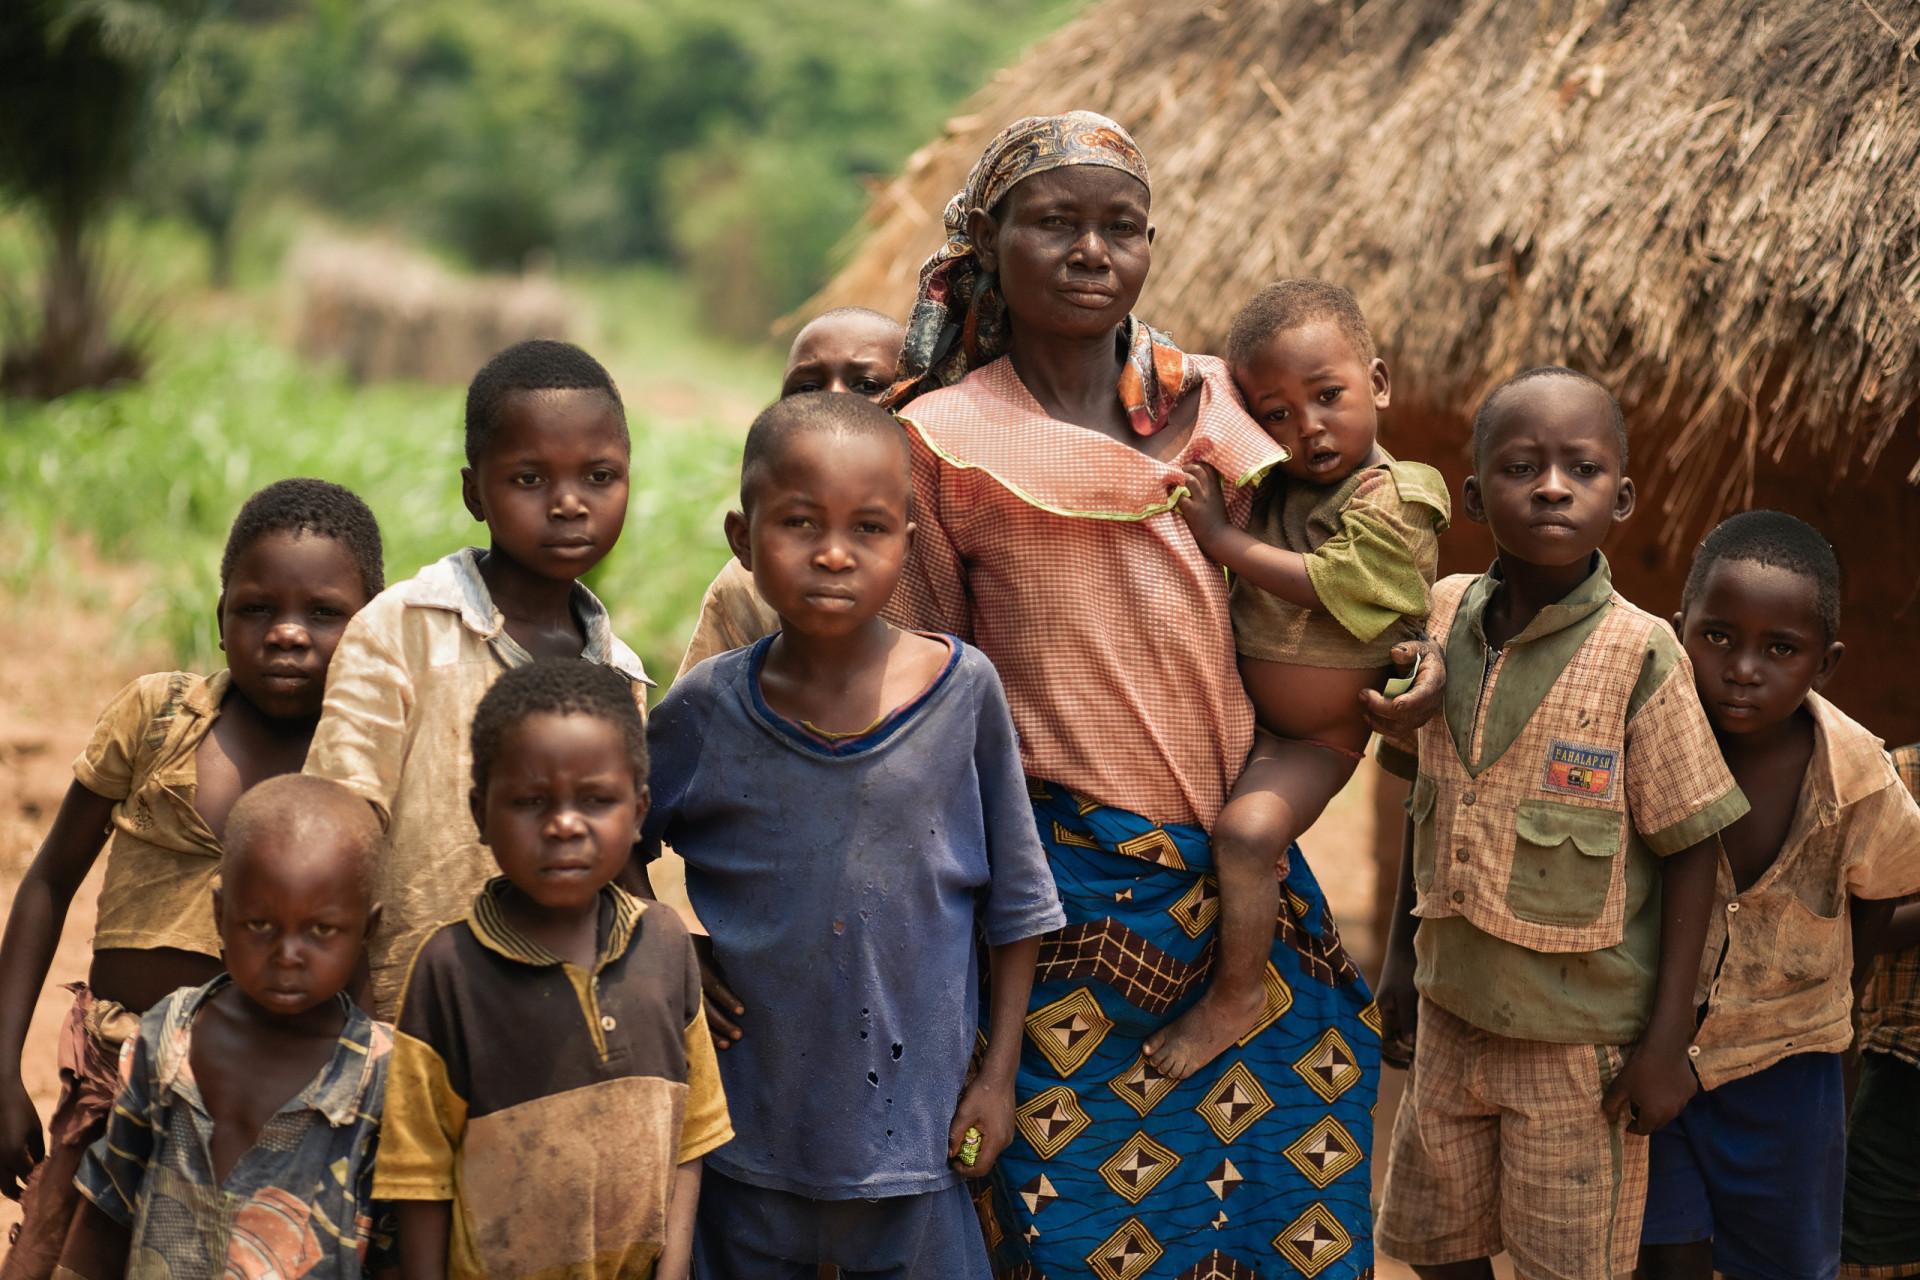 <p>Taux de fécondité moyen par femme : 5,56<br><br>La RDC est l'un des pays les plus pauvres du monde, ce qui signifie qu'un taux de fécondité élevé ne fait qu'accroître la pression sur son développement.</p><p>Tu pourrais aussi aimer:<a href="https://www.starsinsider.com/n/369314?utm_source=msn.com&utm_medium=display&utm_campaign=referral_description&utm_content=694226"> Un séjour en croisière, une bonne idée ?</a></p>